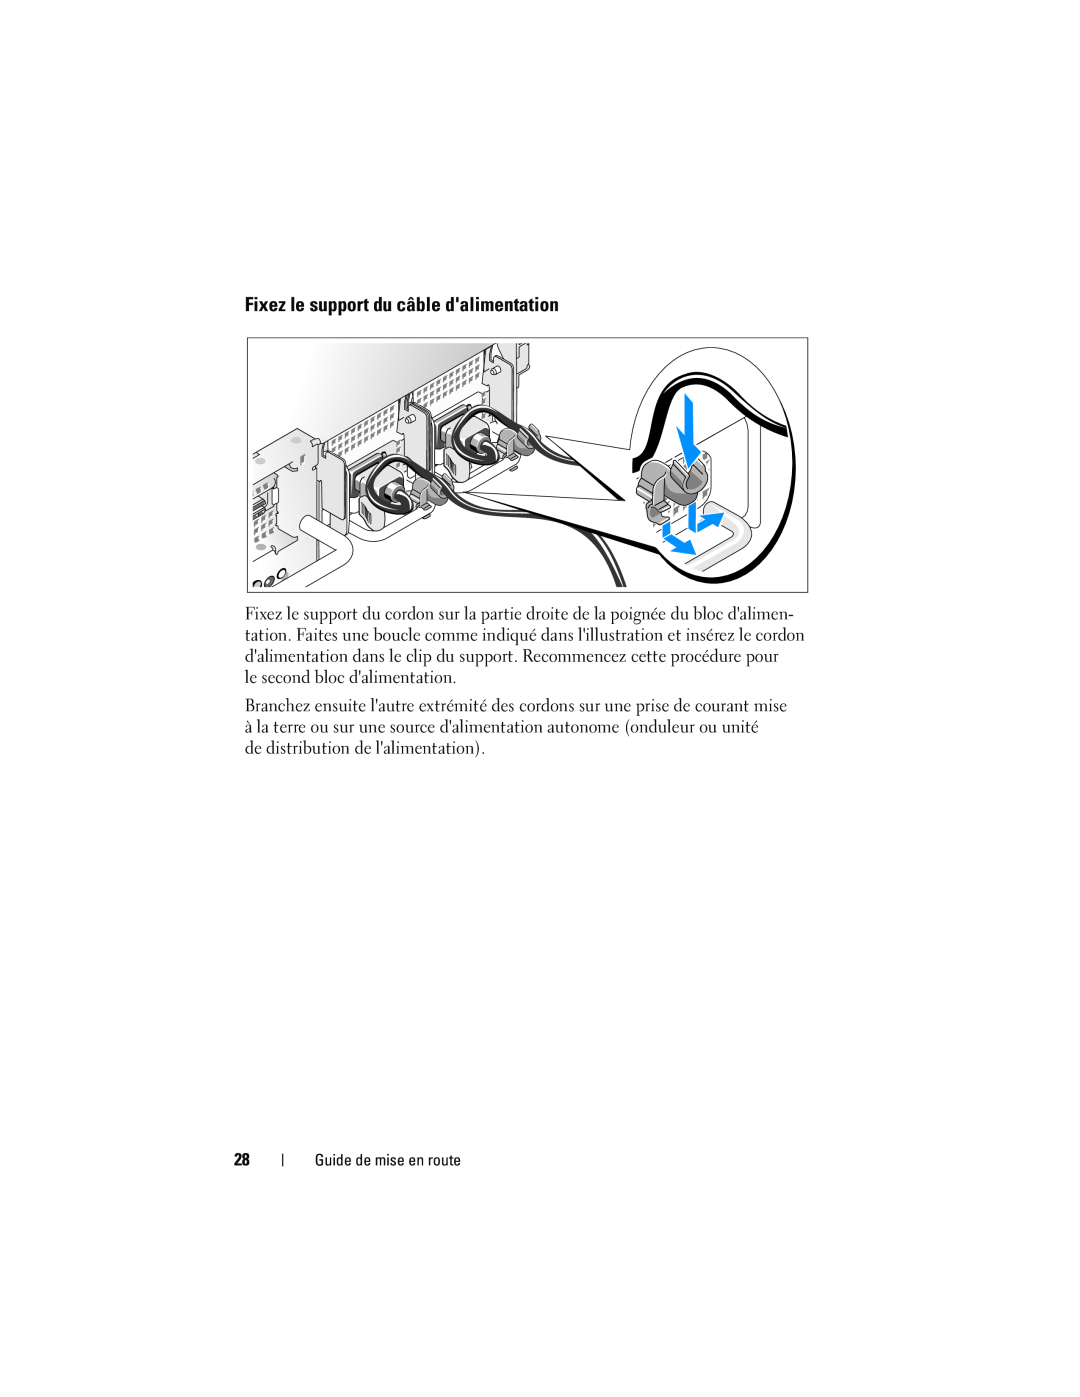 Dell EMS01, YX154 manual Fixez le support du câble dalimentation, Guide de mise en route 